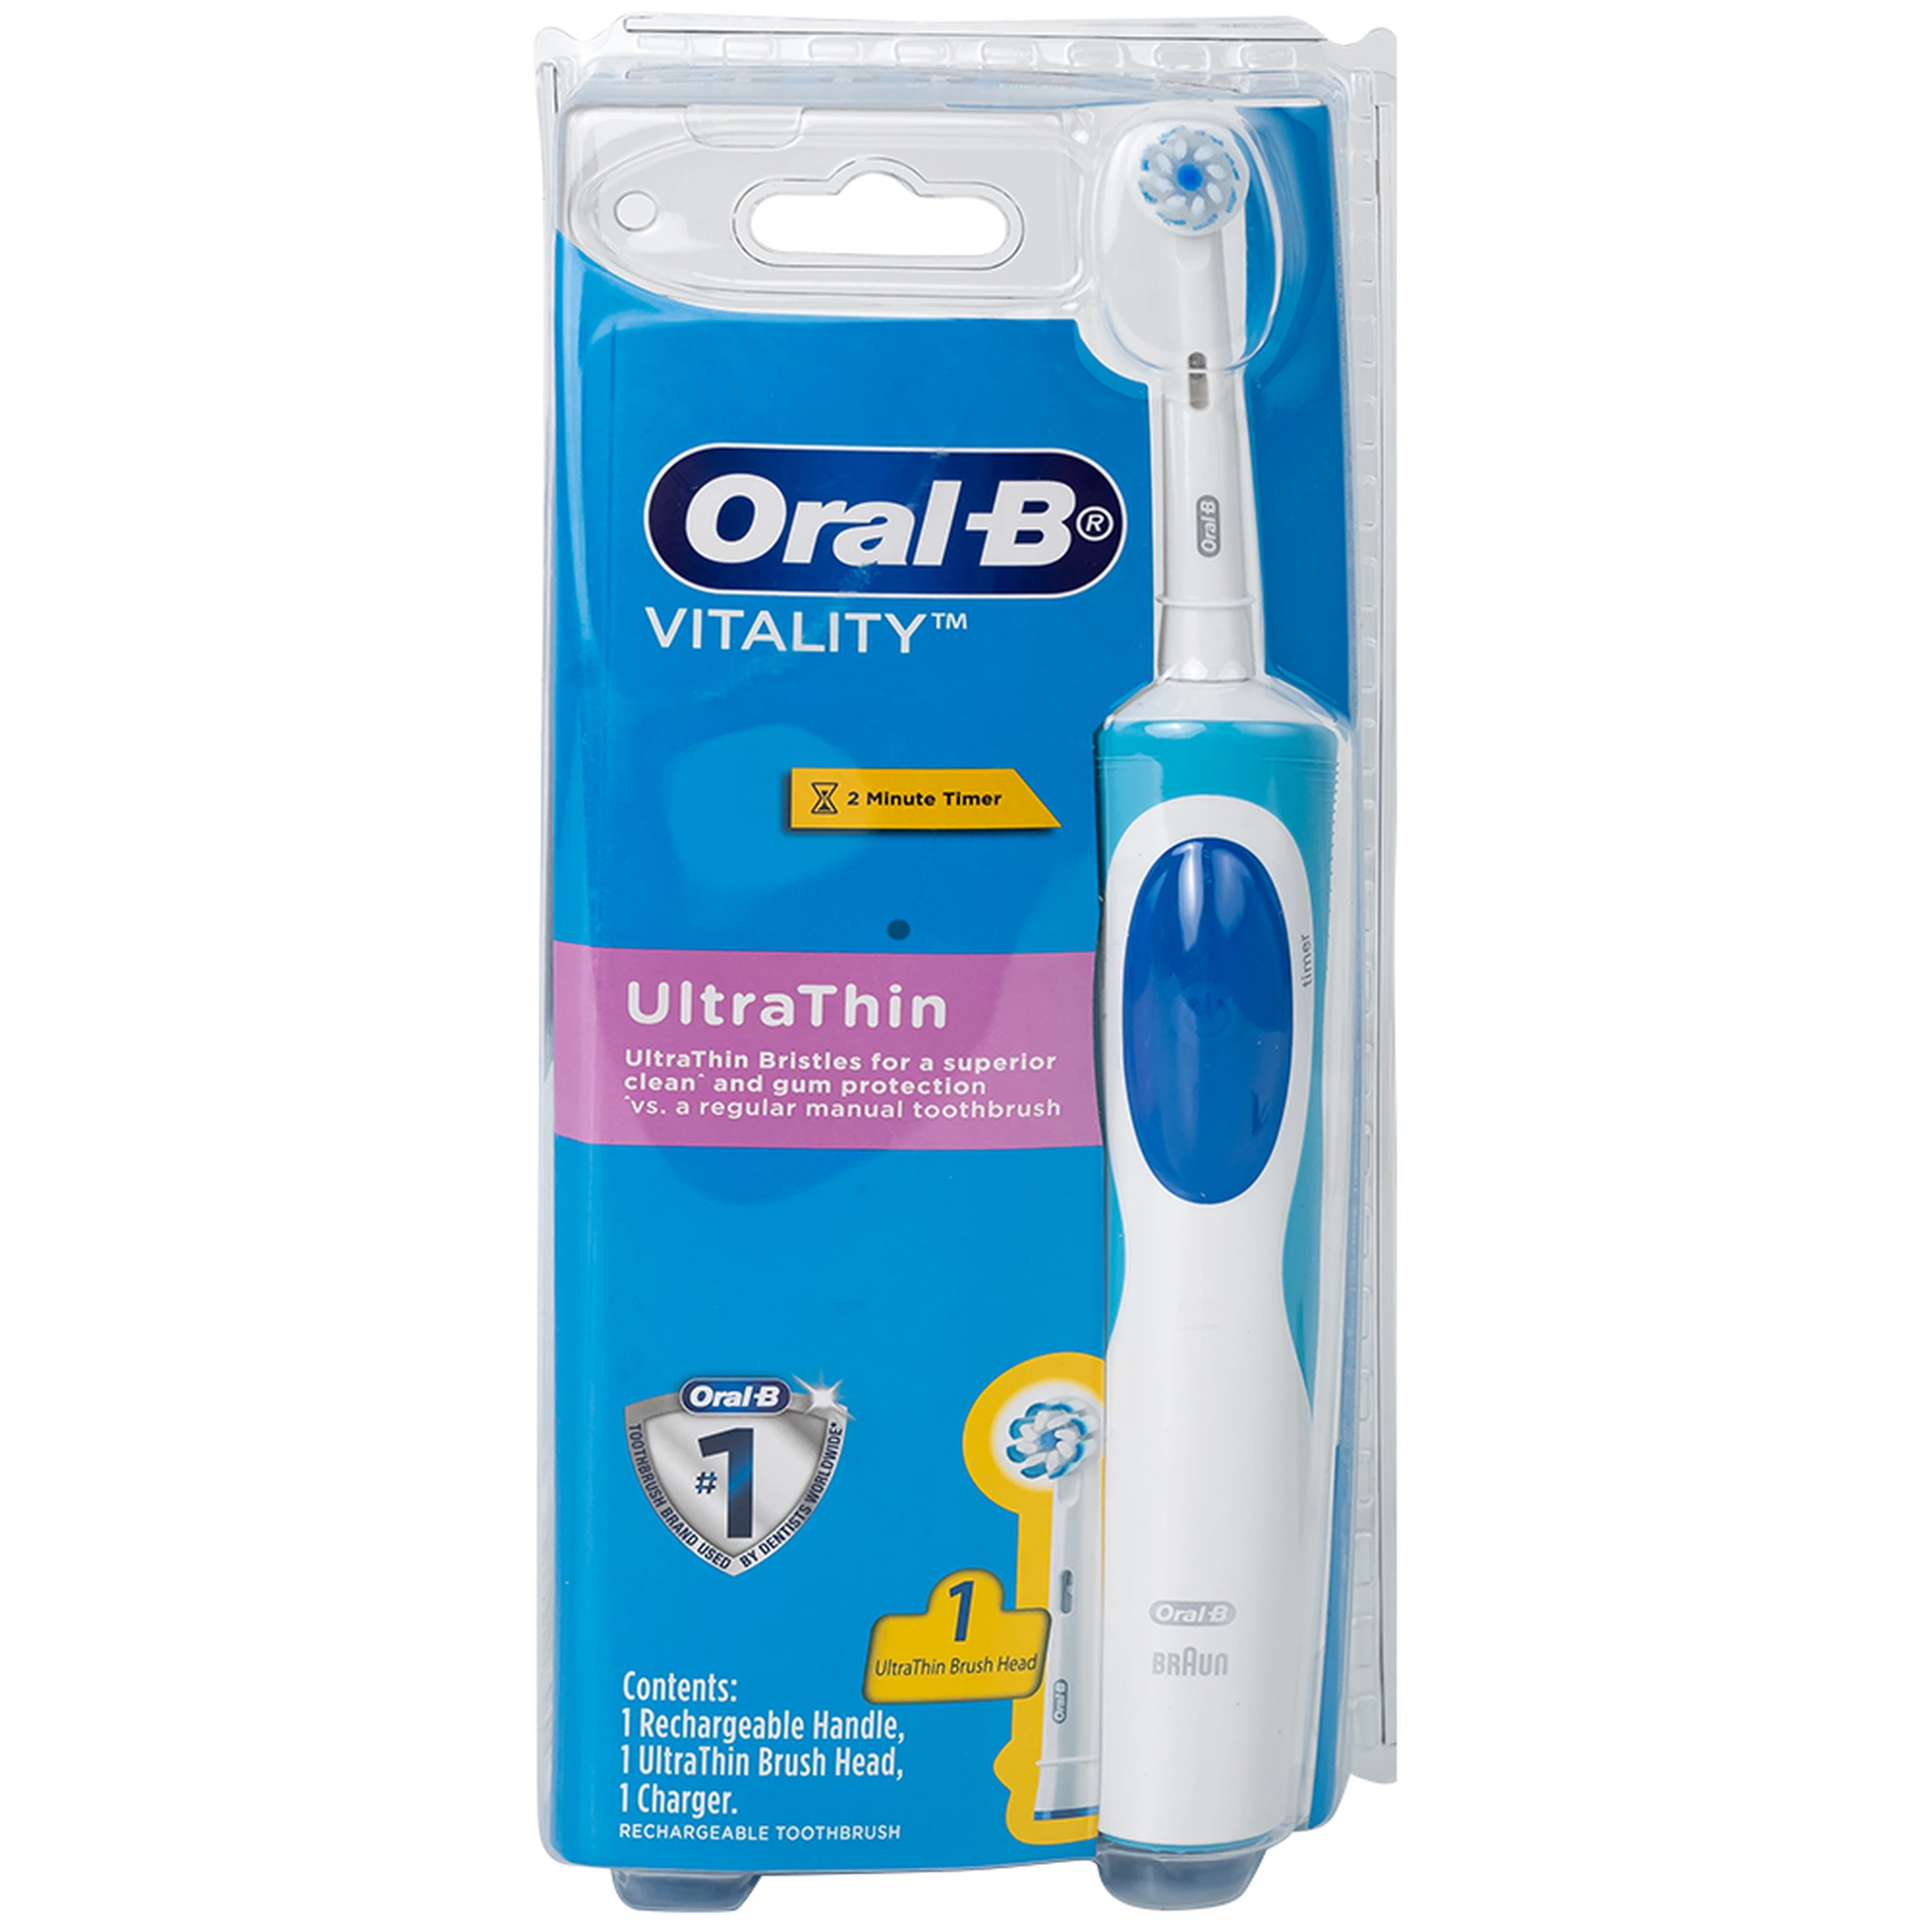 Bàn chải đánh răng điện Oral-B Vitality Ultrathin D12.513 giúp làm sạch mảng bám trên răng, loại bỏ các vết ố răng